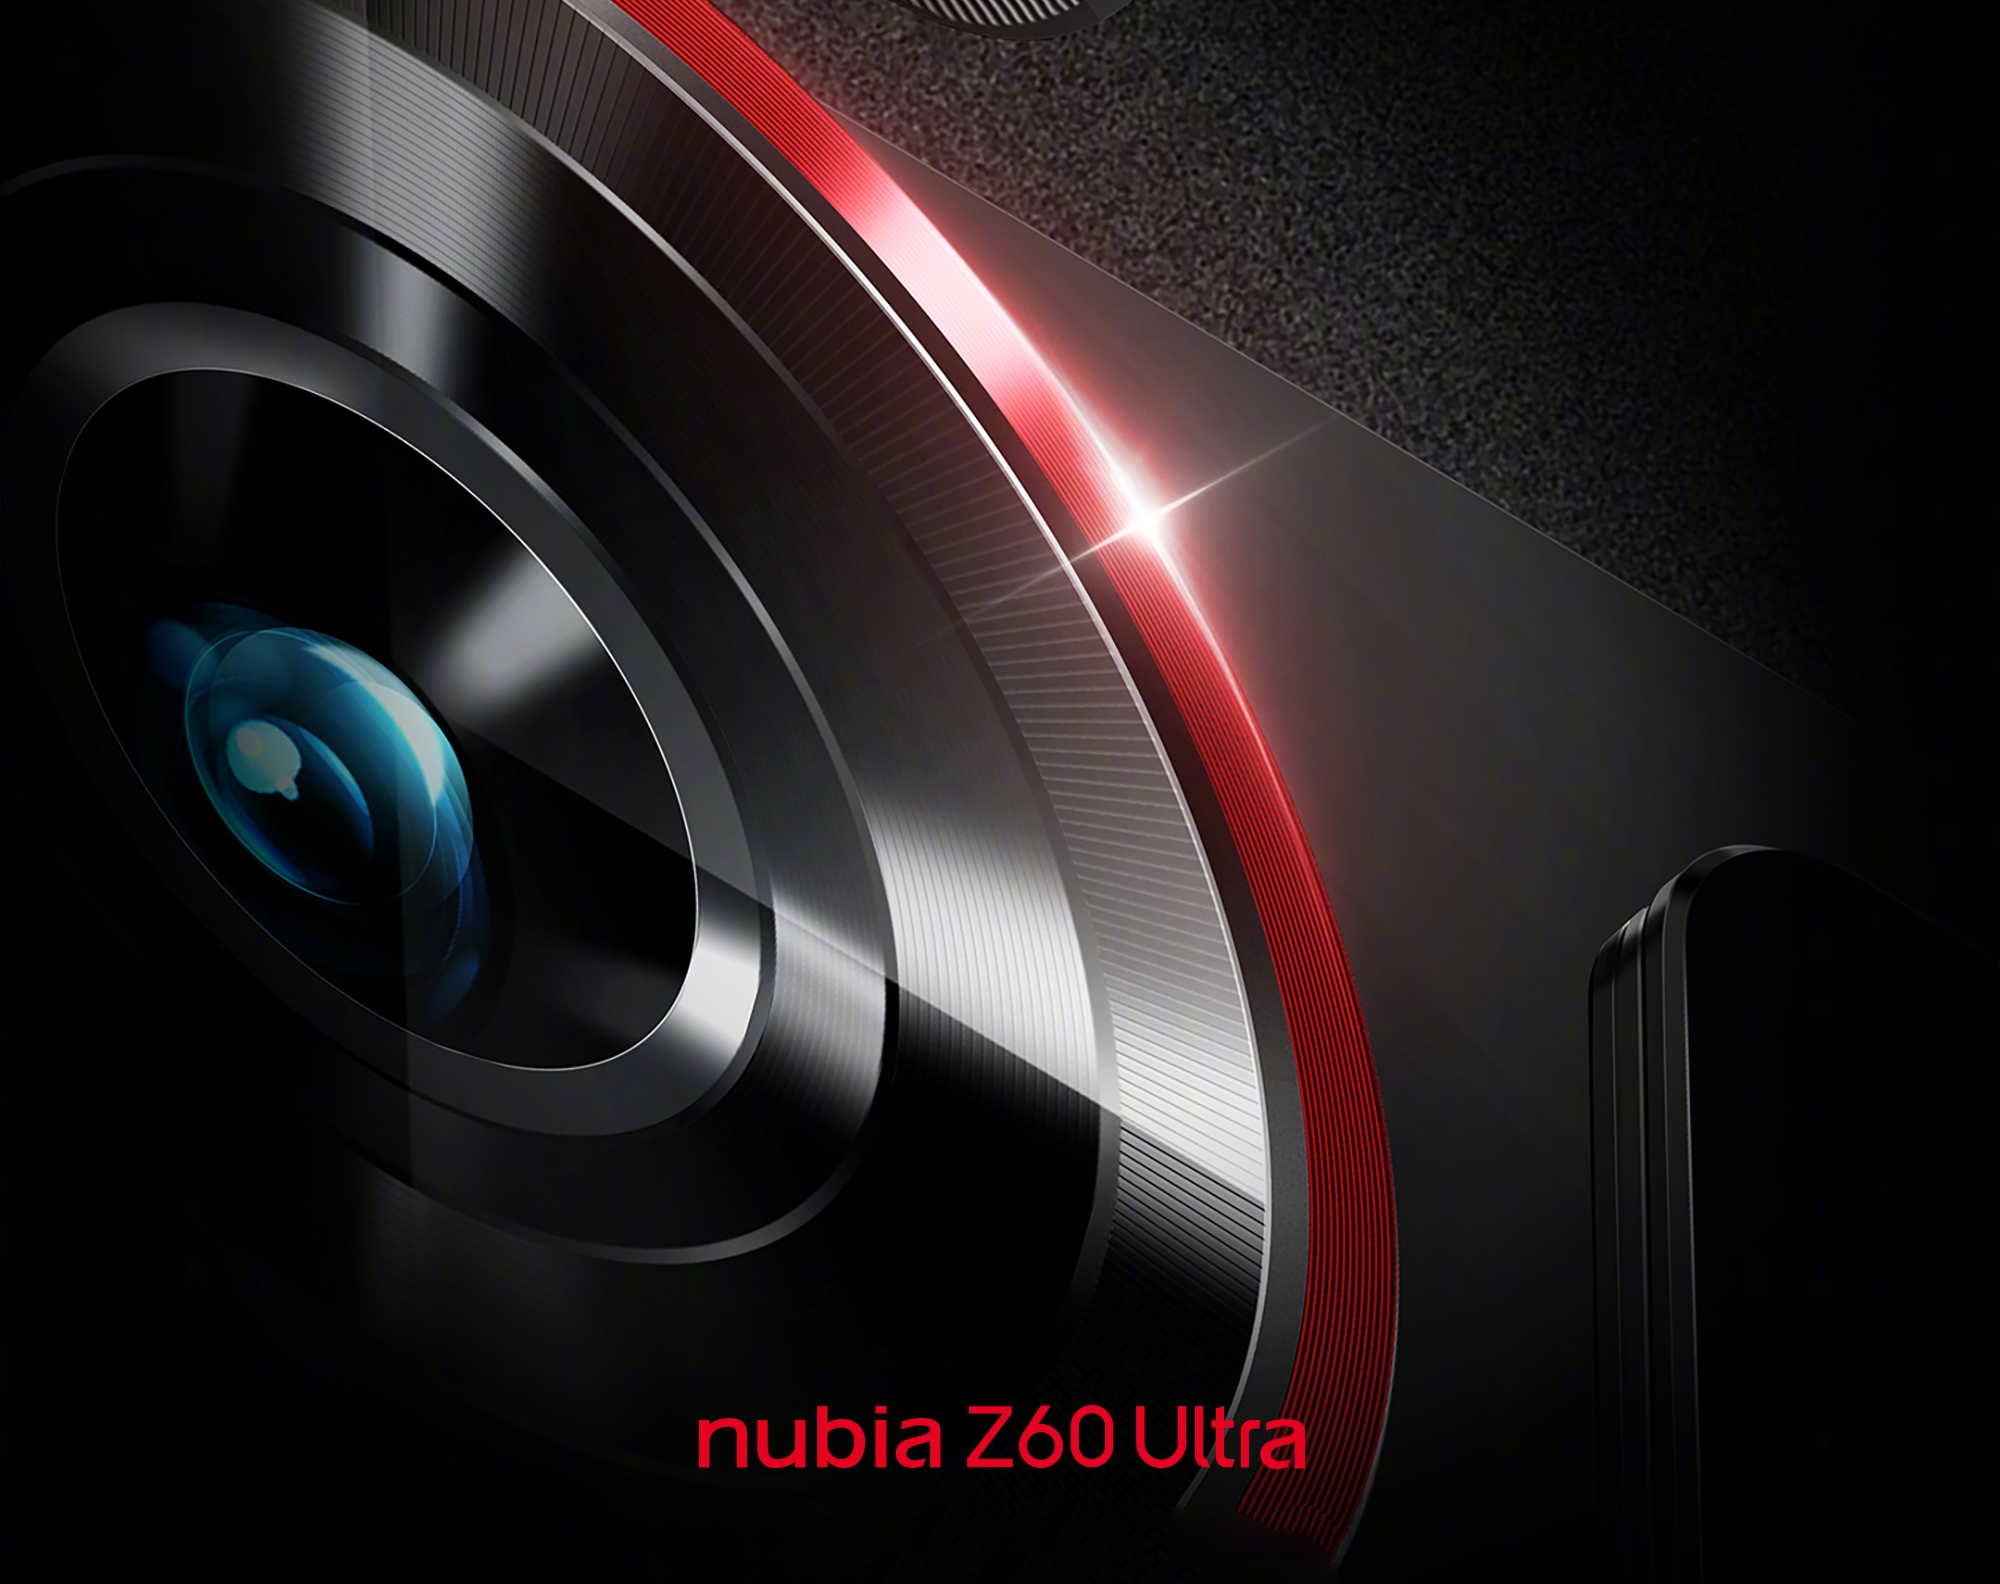 ZTE ujawniło specyfikację aparatu flagowego modelu Nubia Z60 Ultra